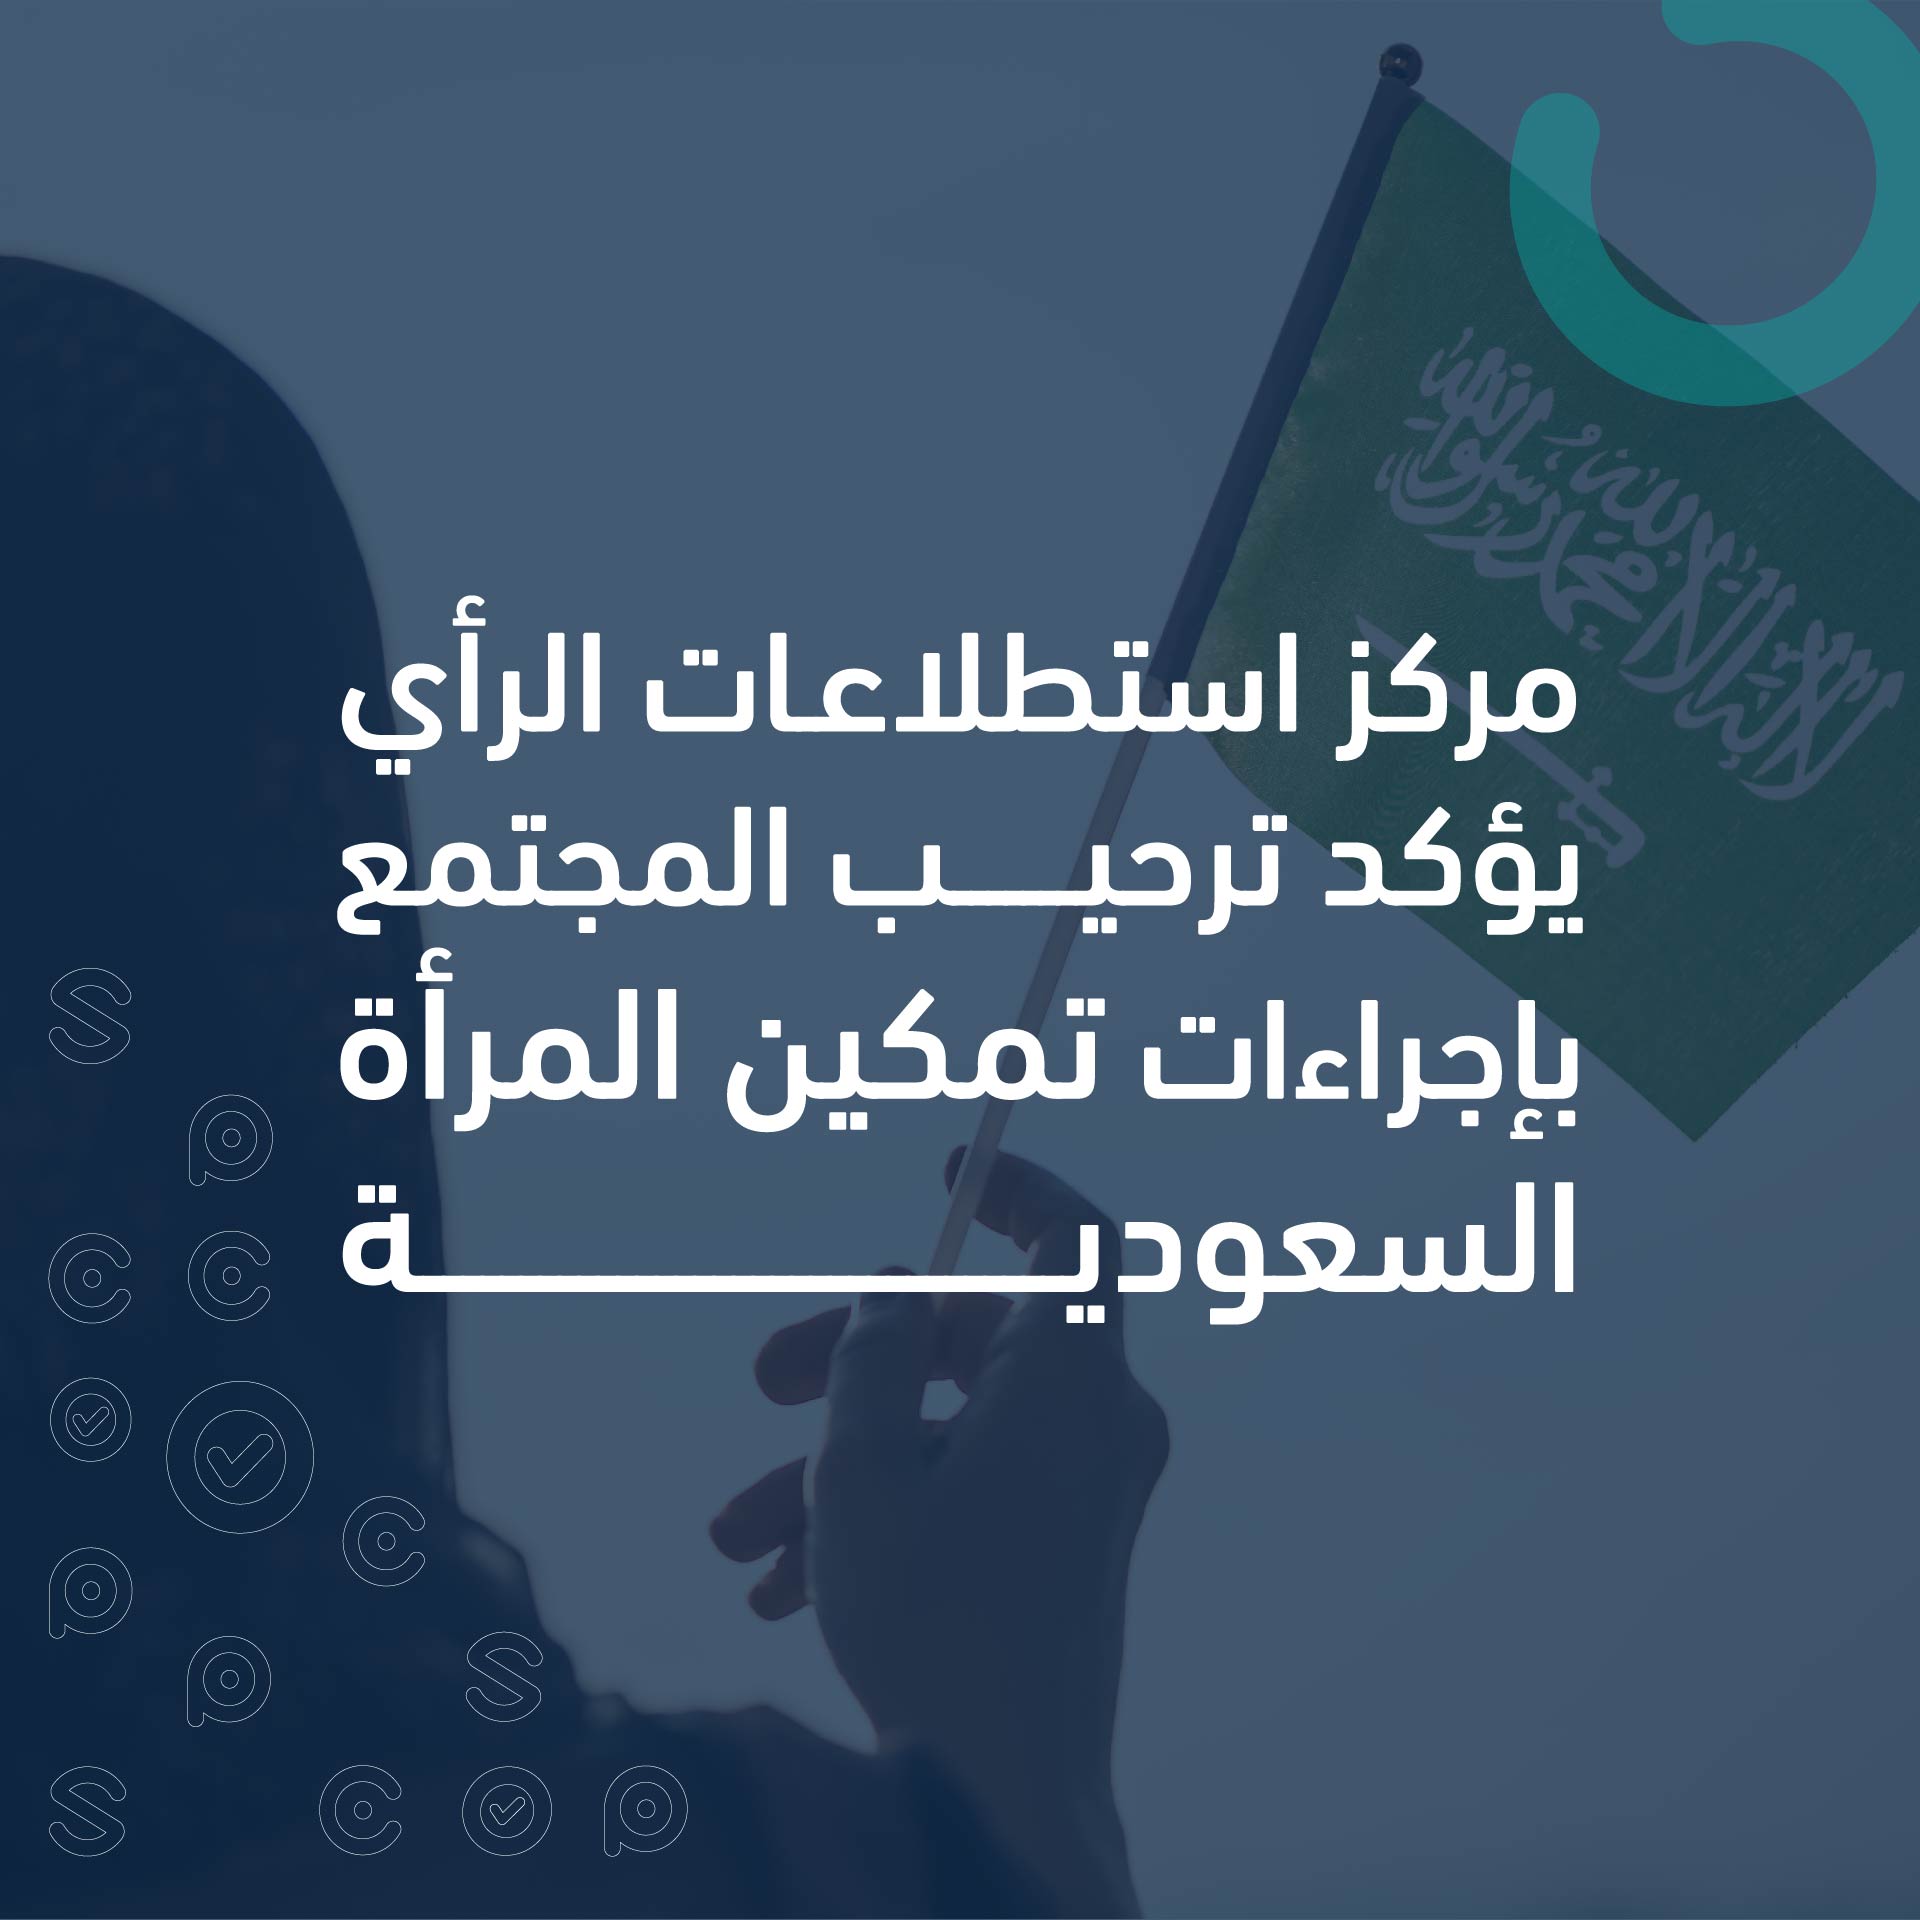 مركز استطلاعات الرأي يؤكد ترحيب المجتمع بإجراءات تمكين المرأة السعودية